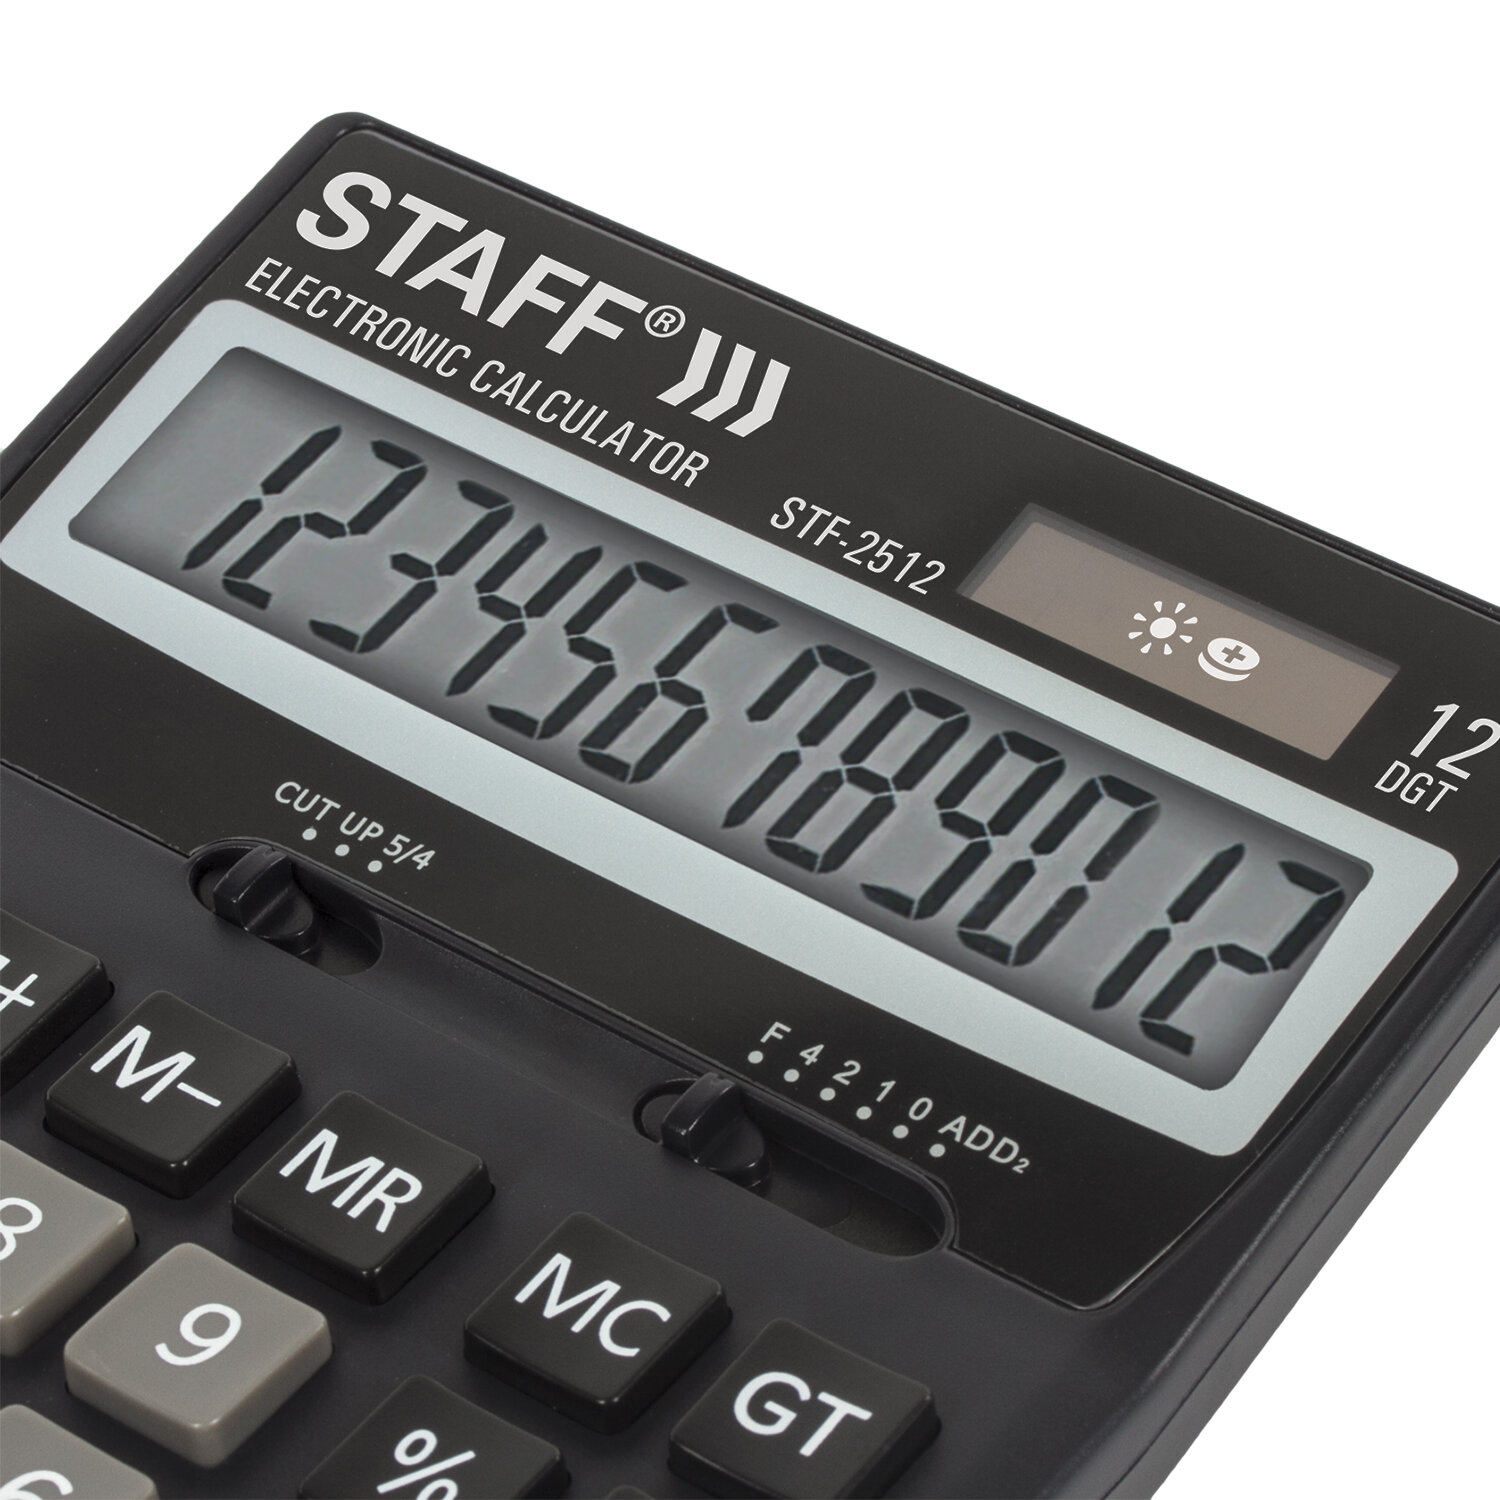 Калькулятор STAFF настольный STF-2512, 12 разрядов, двойное питание, 170х125мм